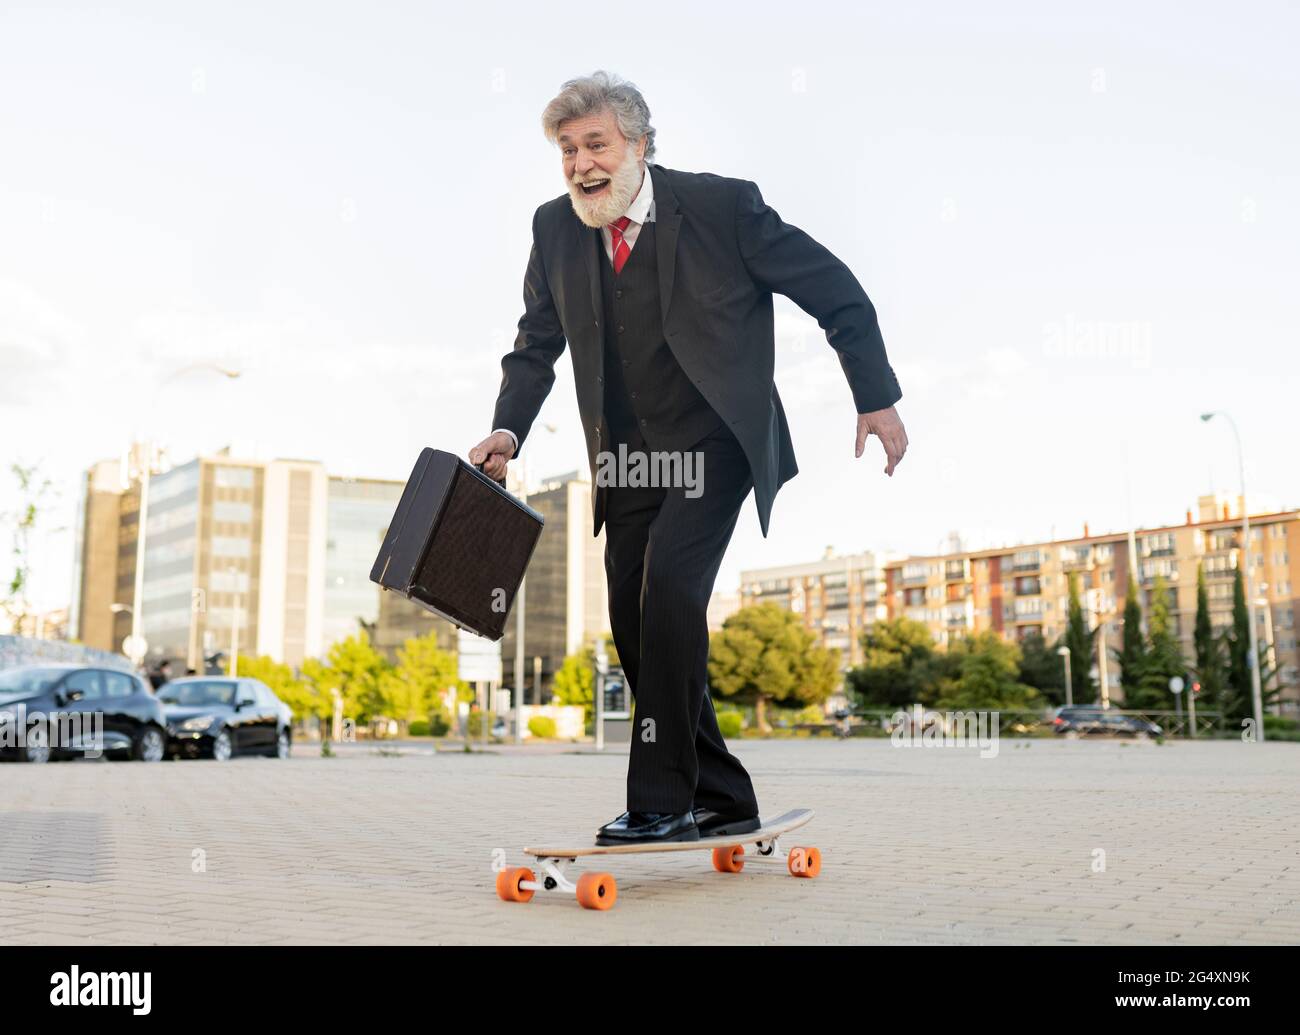 Un homme d'affaires heureux qui se déplace à bord d'un skateboard en ville Banque D'Images